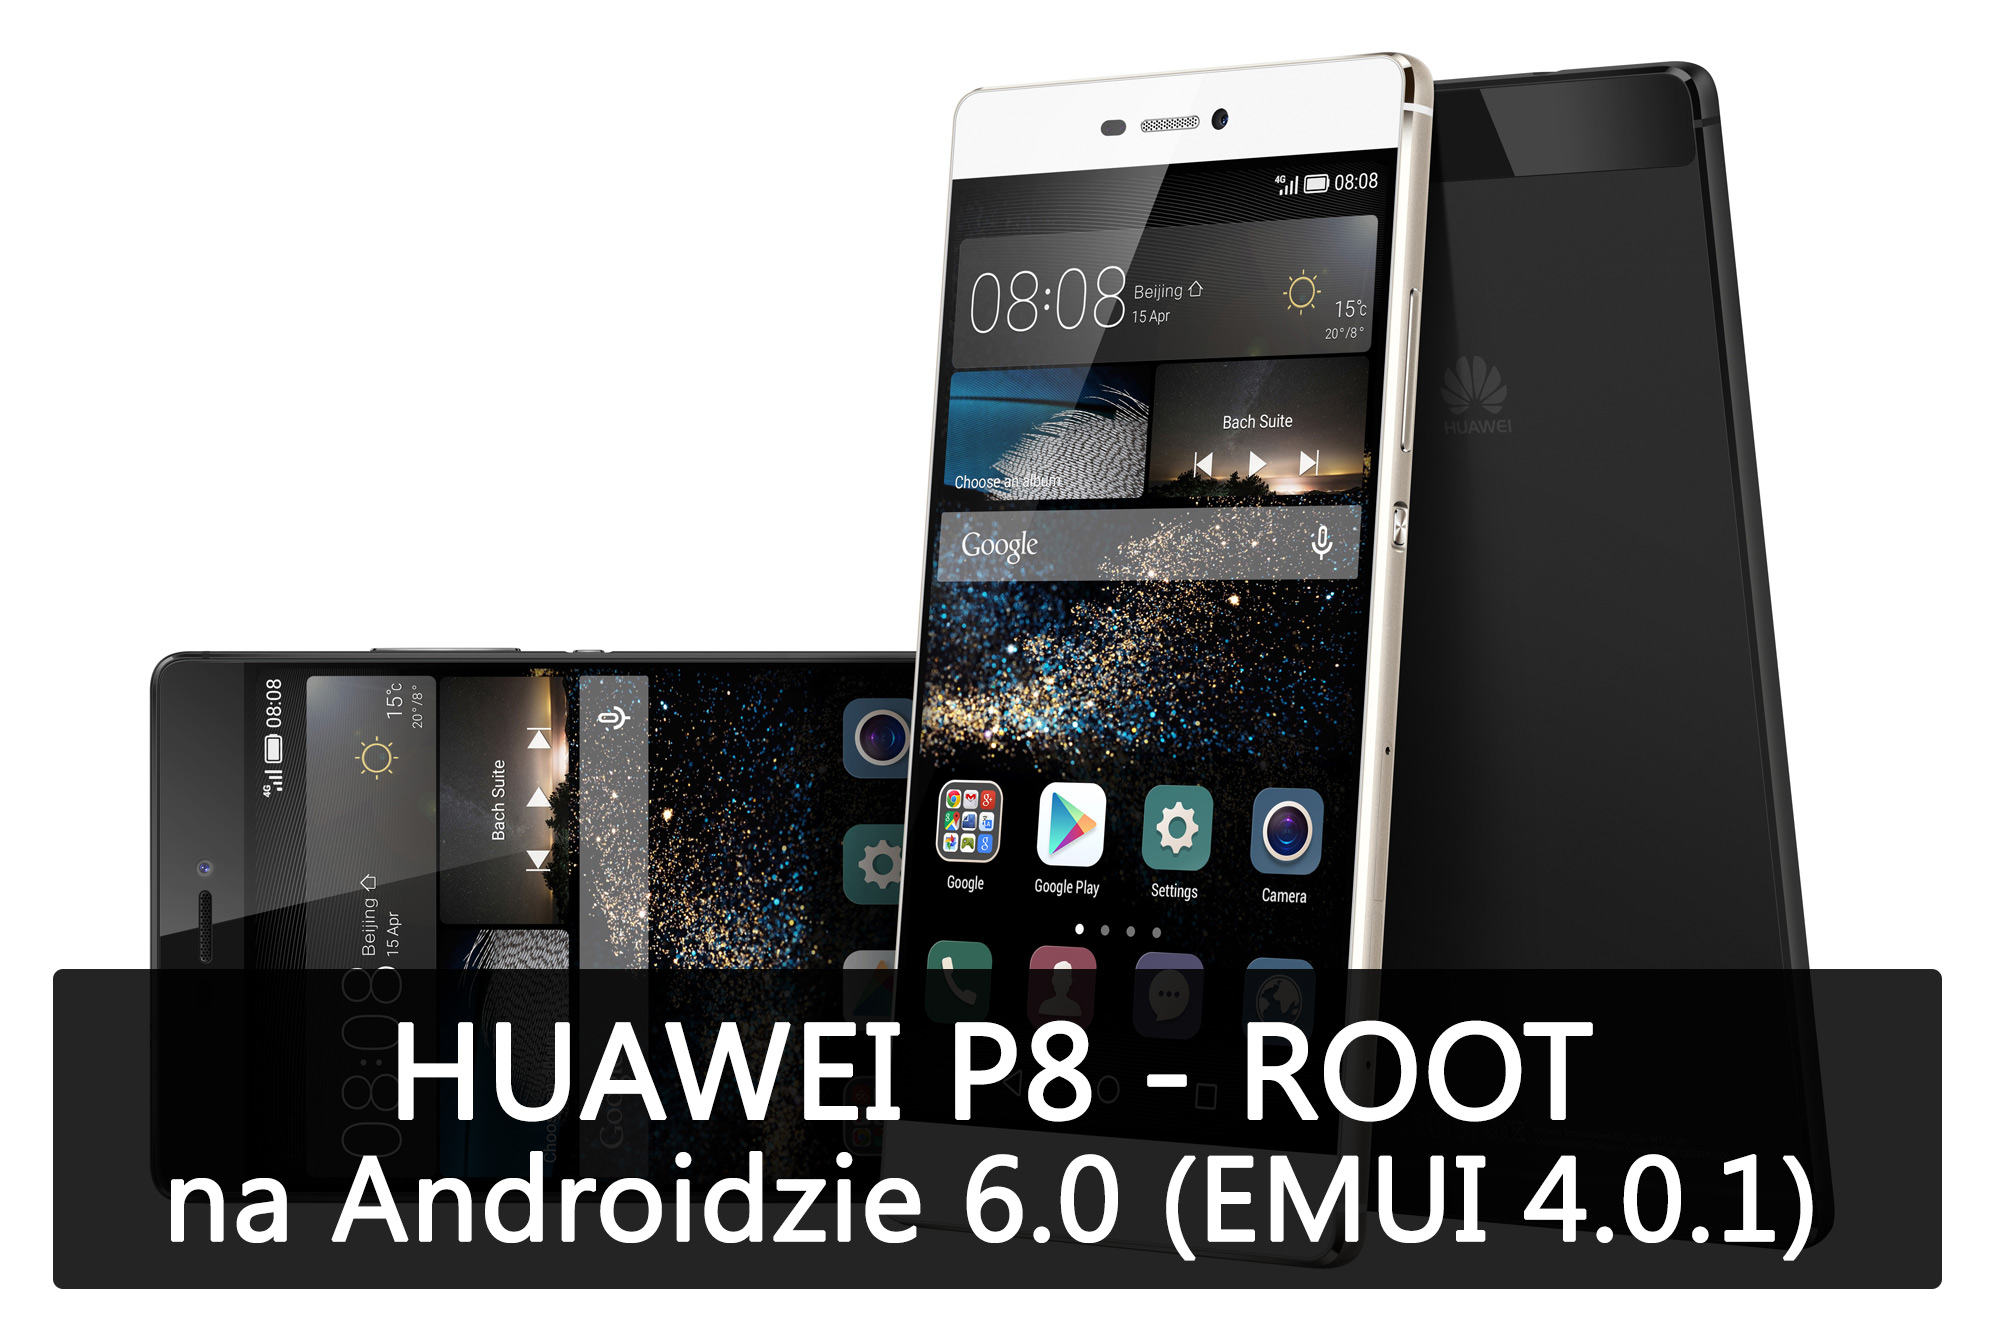 Huawei P8 - jak zrobić ROOT w Androidzie 6.0